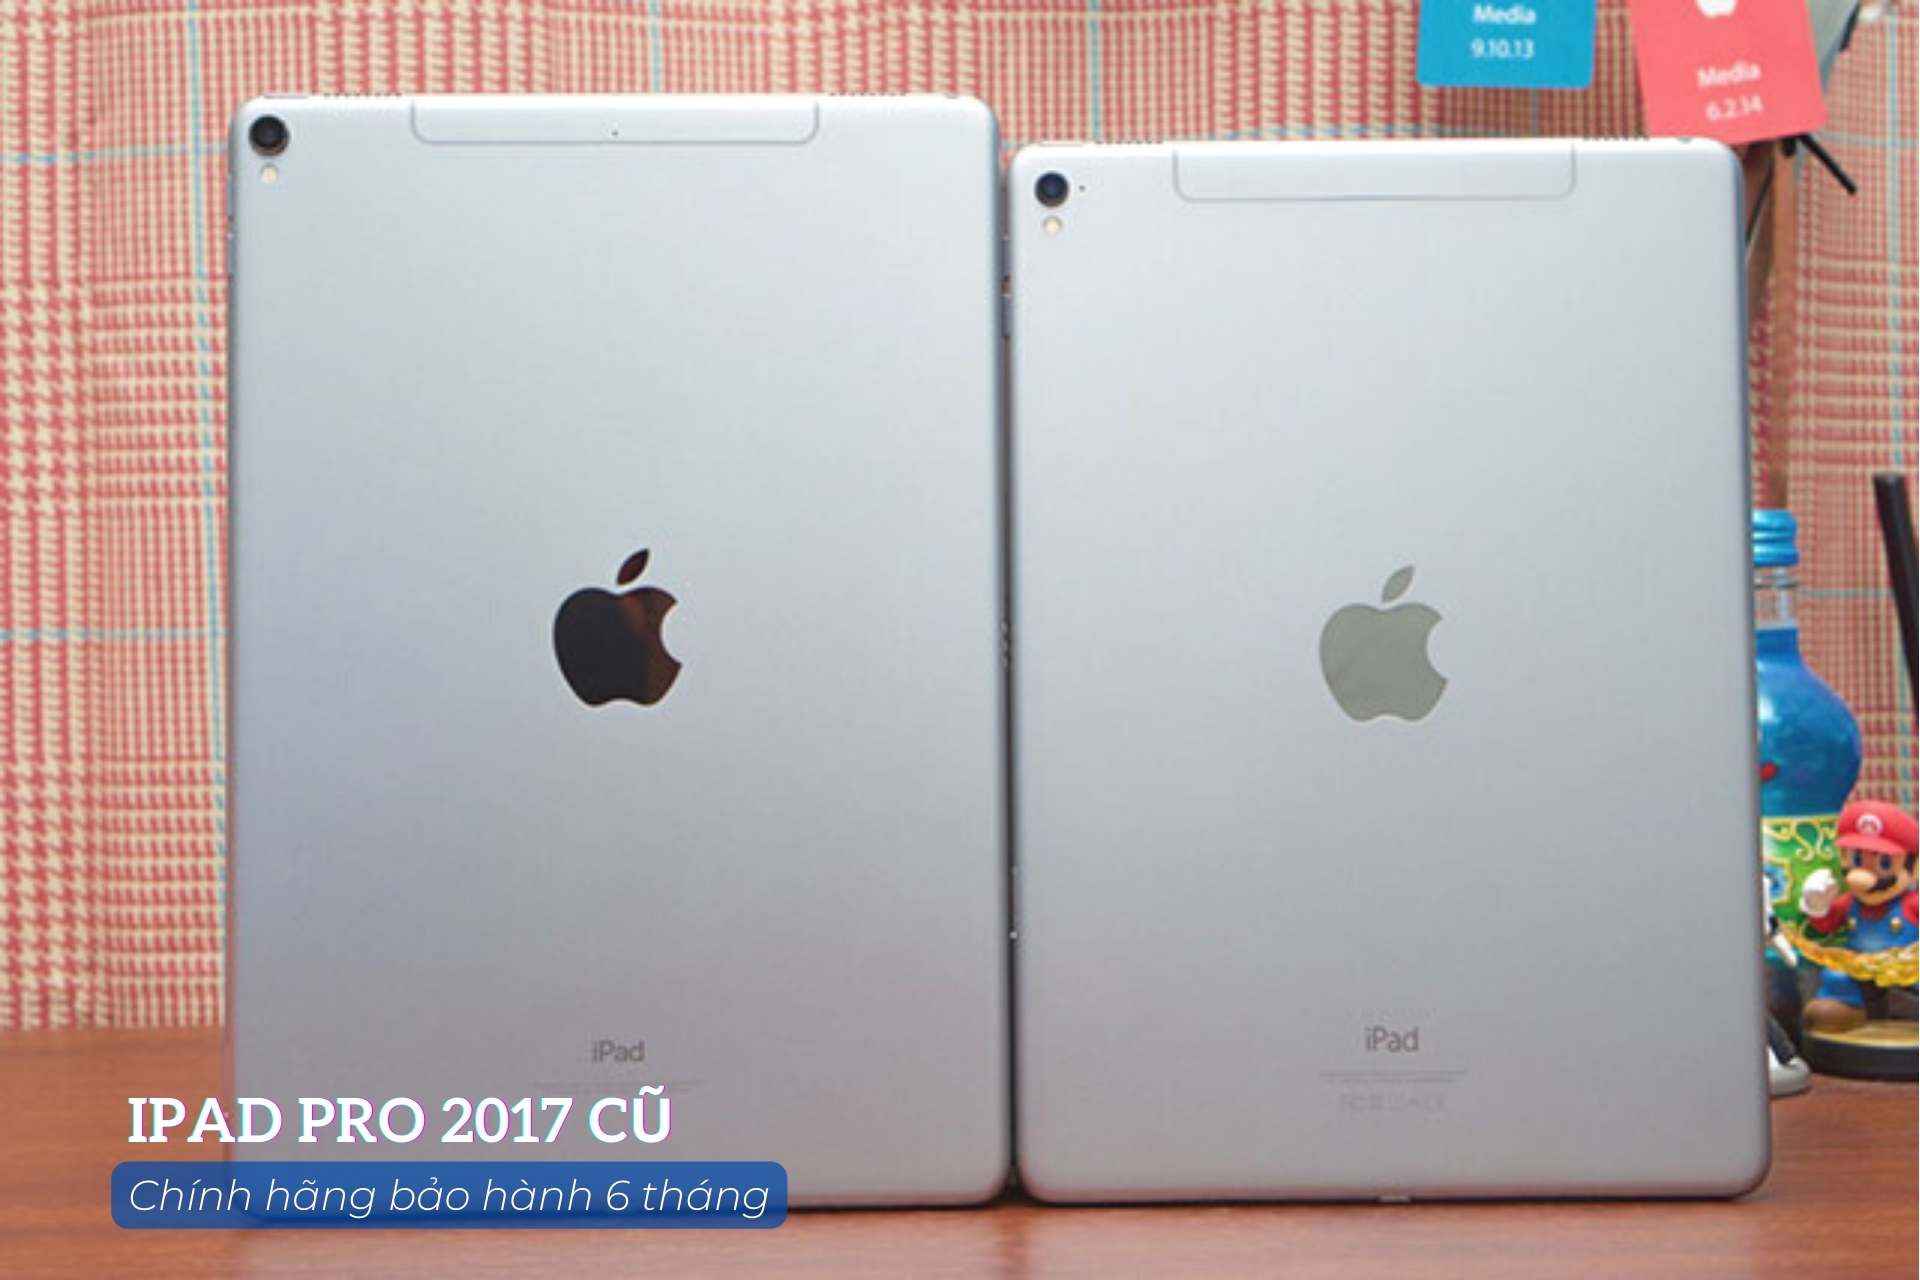 iPad pro 2017 cũ giá rẻ